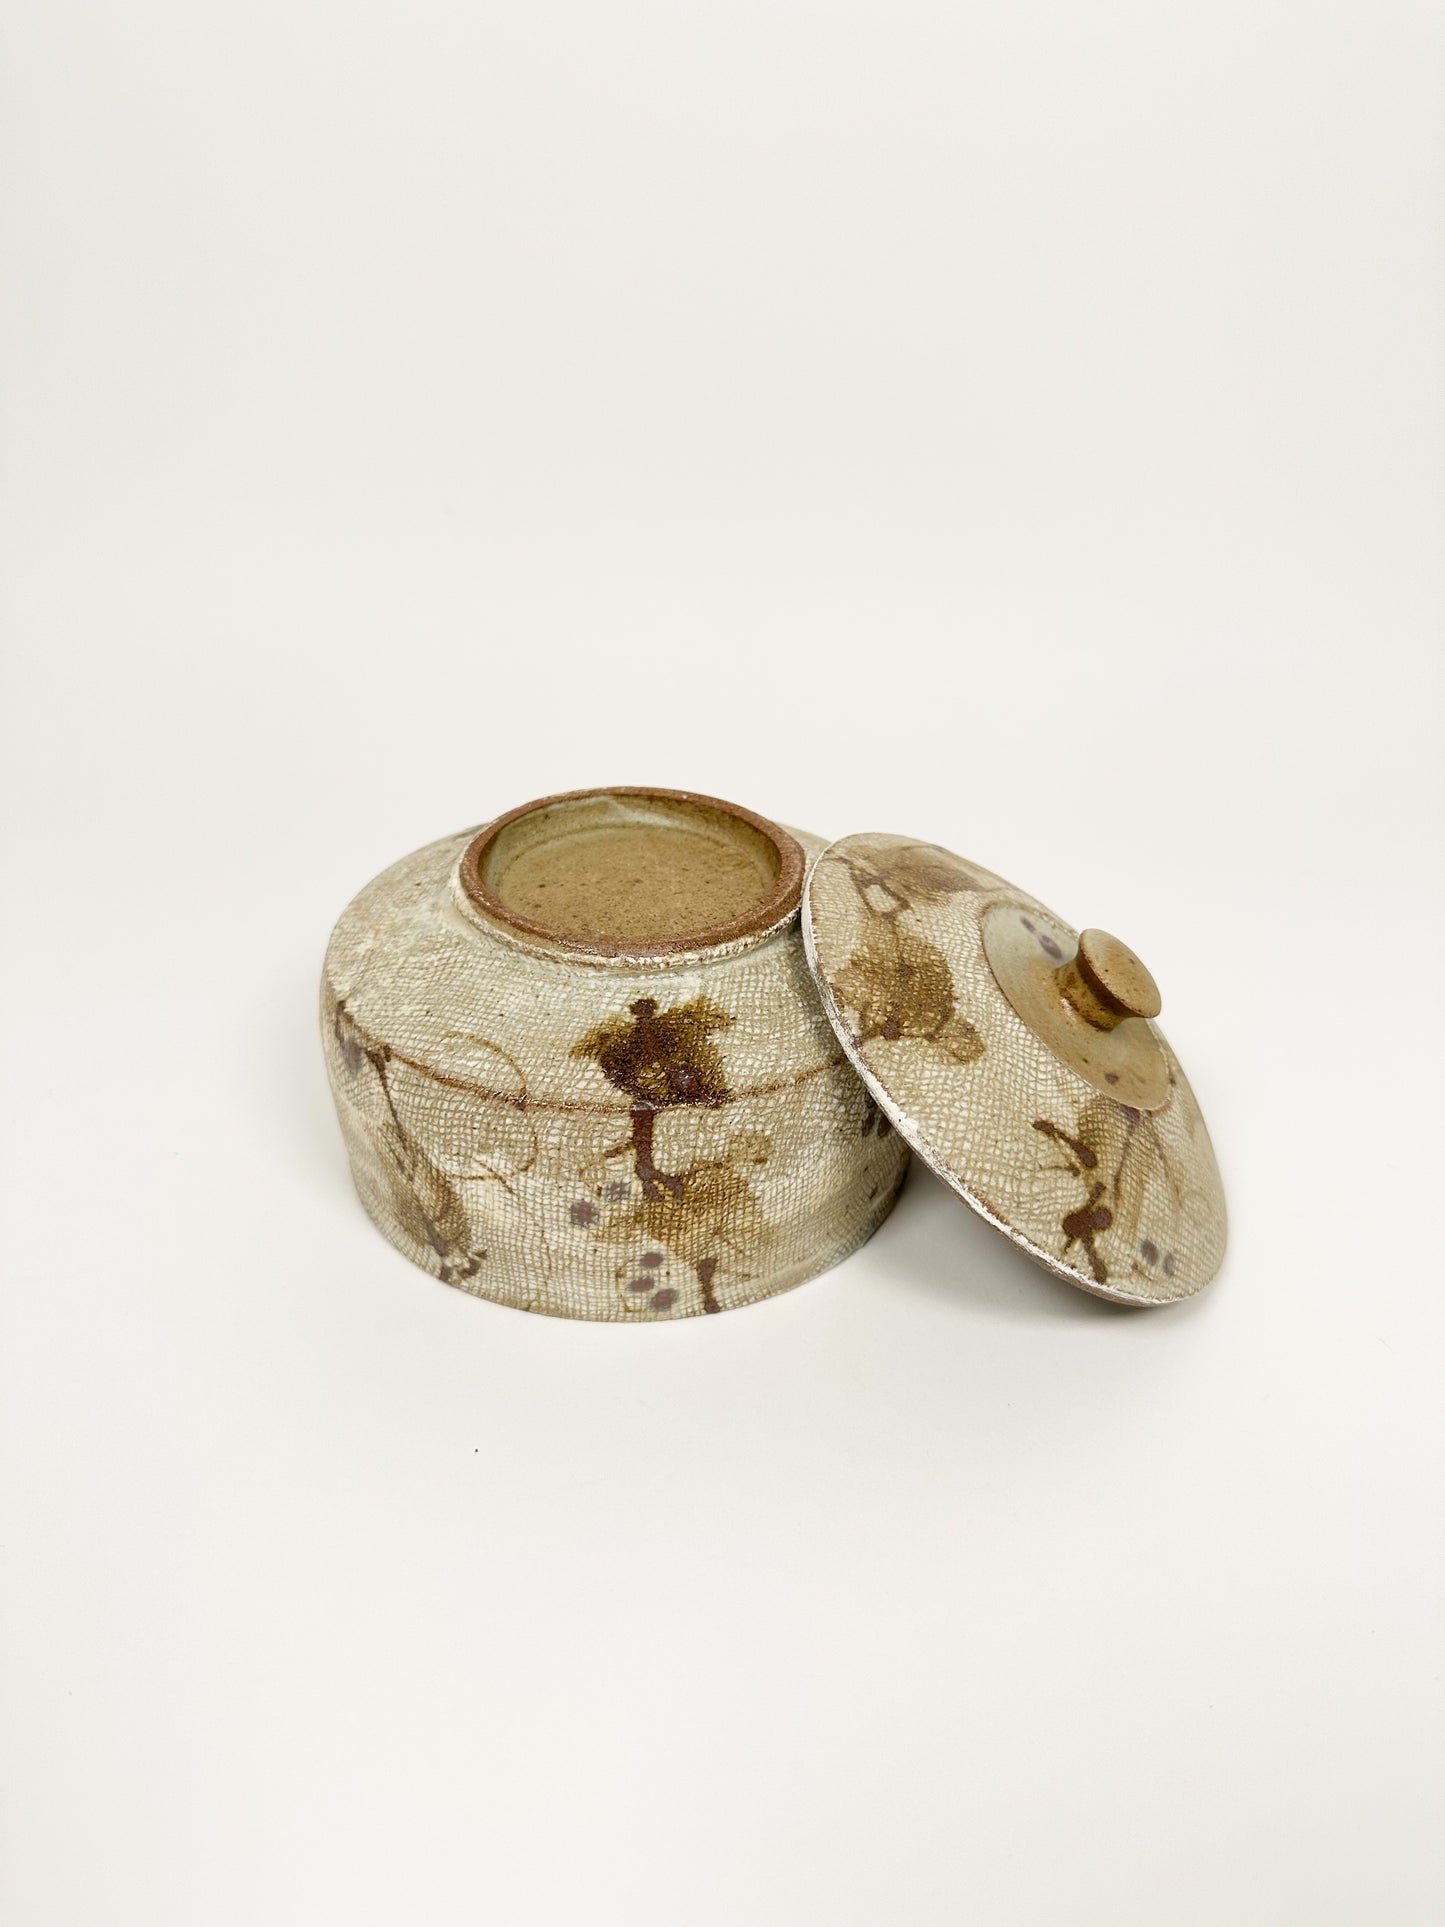 Handmade Ceramic Lidded Vessel